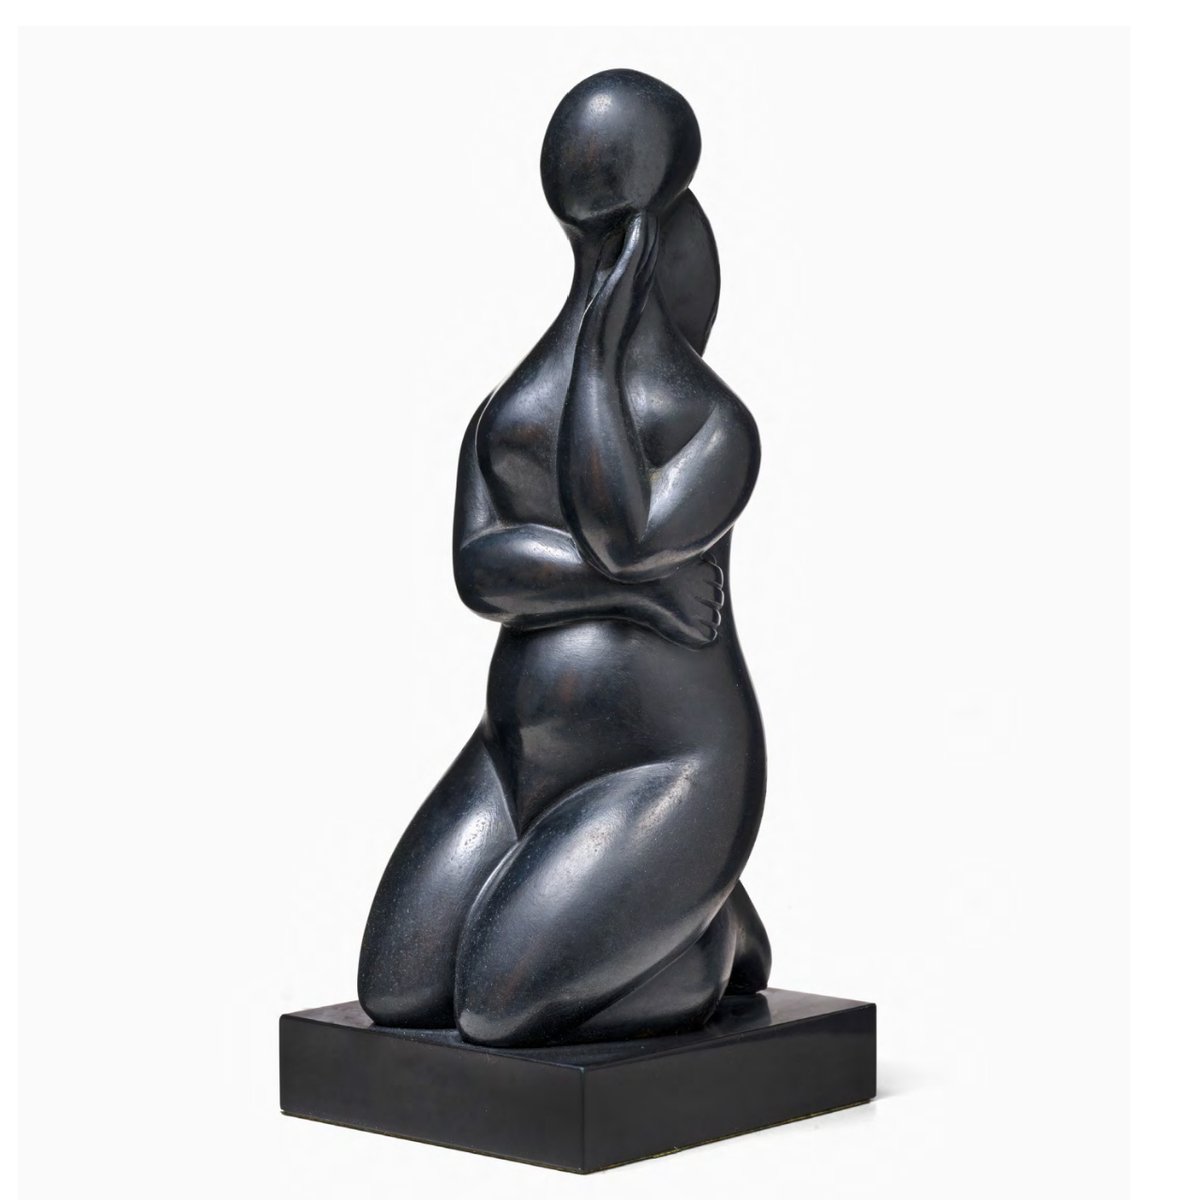 ¡Hola! 😀 Con esta preciosa escultura de una mujer pensativa de rodillas os anunciamos que esta semana viajamos virtualmente fuera de nuestro país para conocer una galería 🎨que mantiene una especial apuesta por  Baltasar Lobo ¡Atentos! #baltasarlobo #escultura #artecontemporaneo